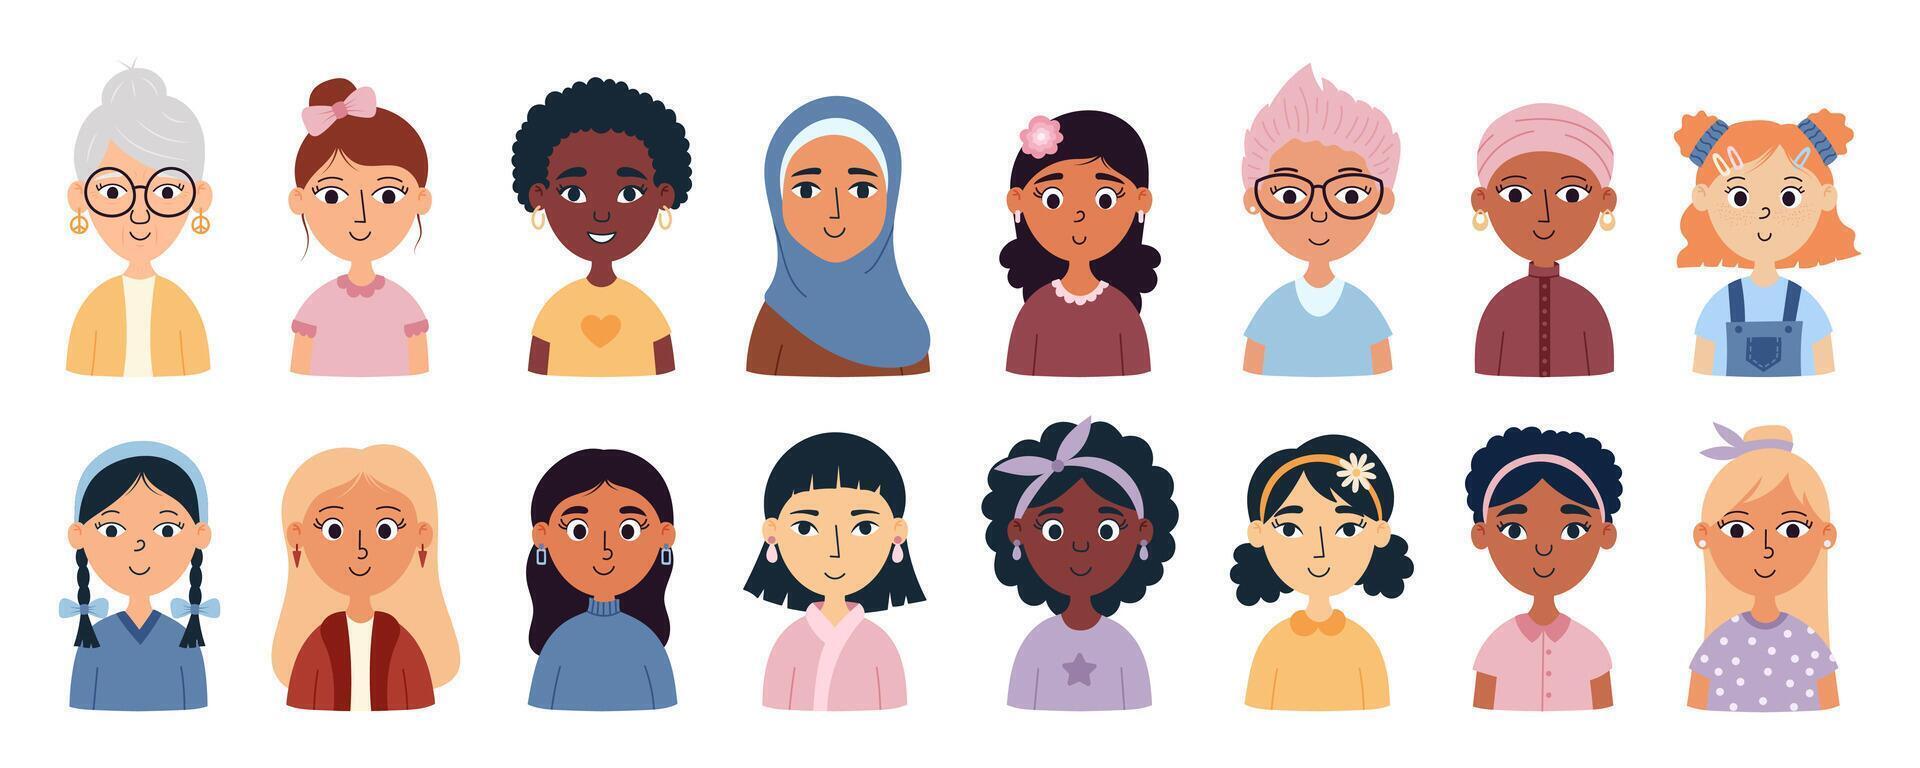 conjunto de mujer avatares con diferente peinados, piel colores, etnias y edad. internacional De las mujeres día. inspirar inclusión. dibujos animados vector ilustración